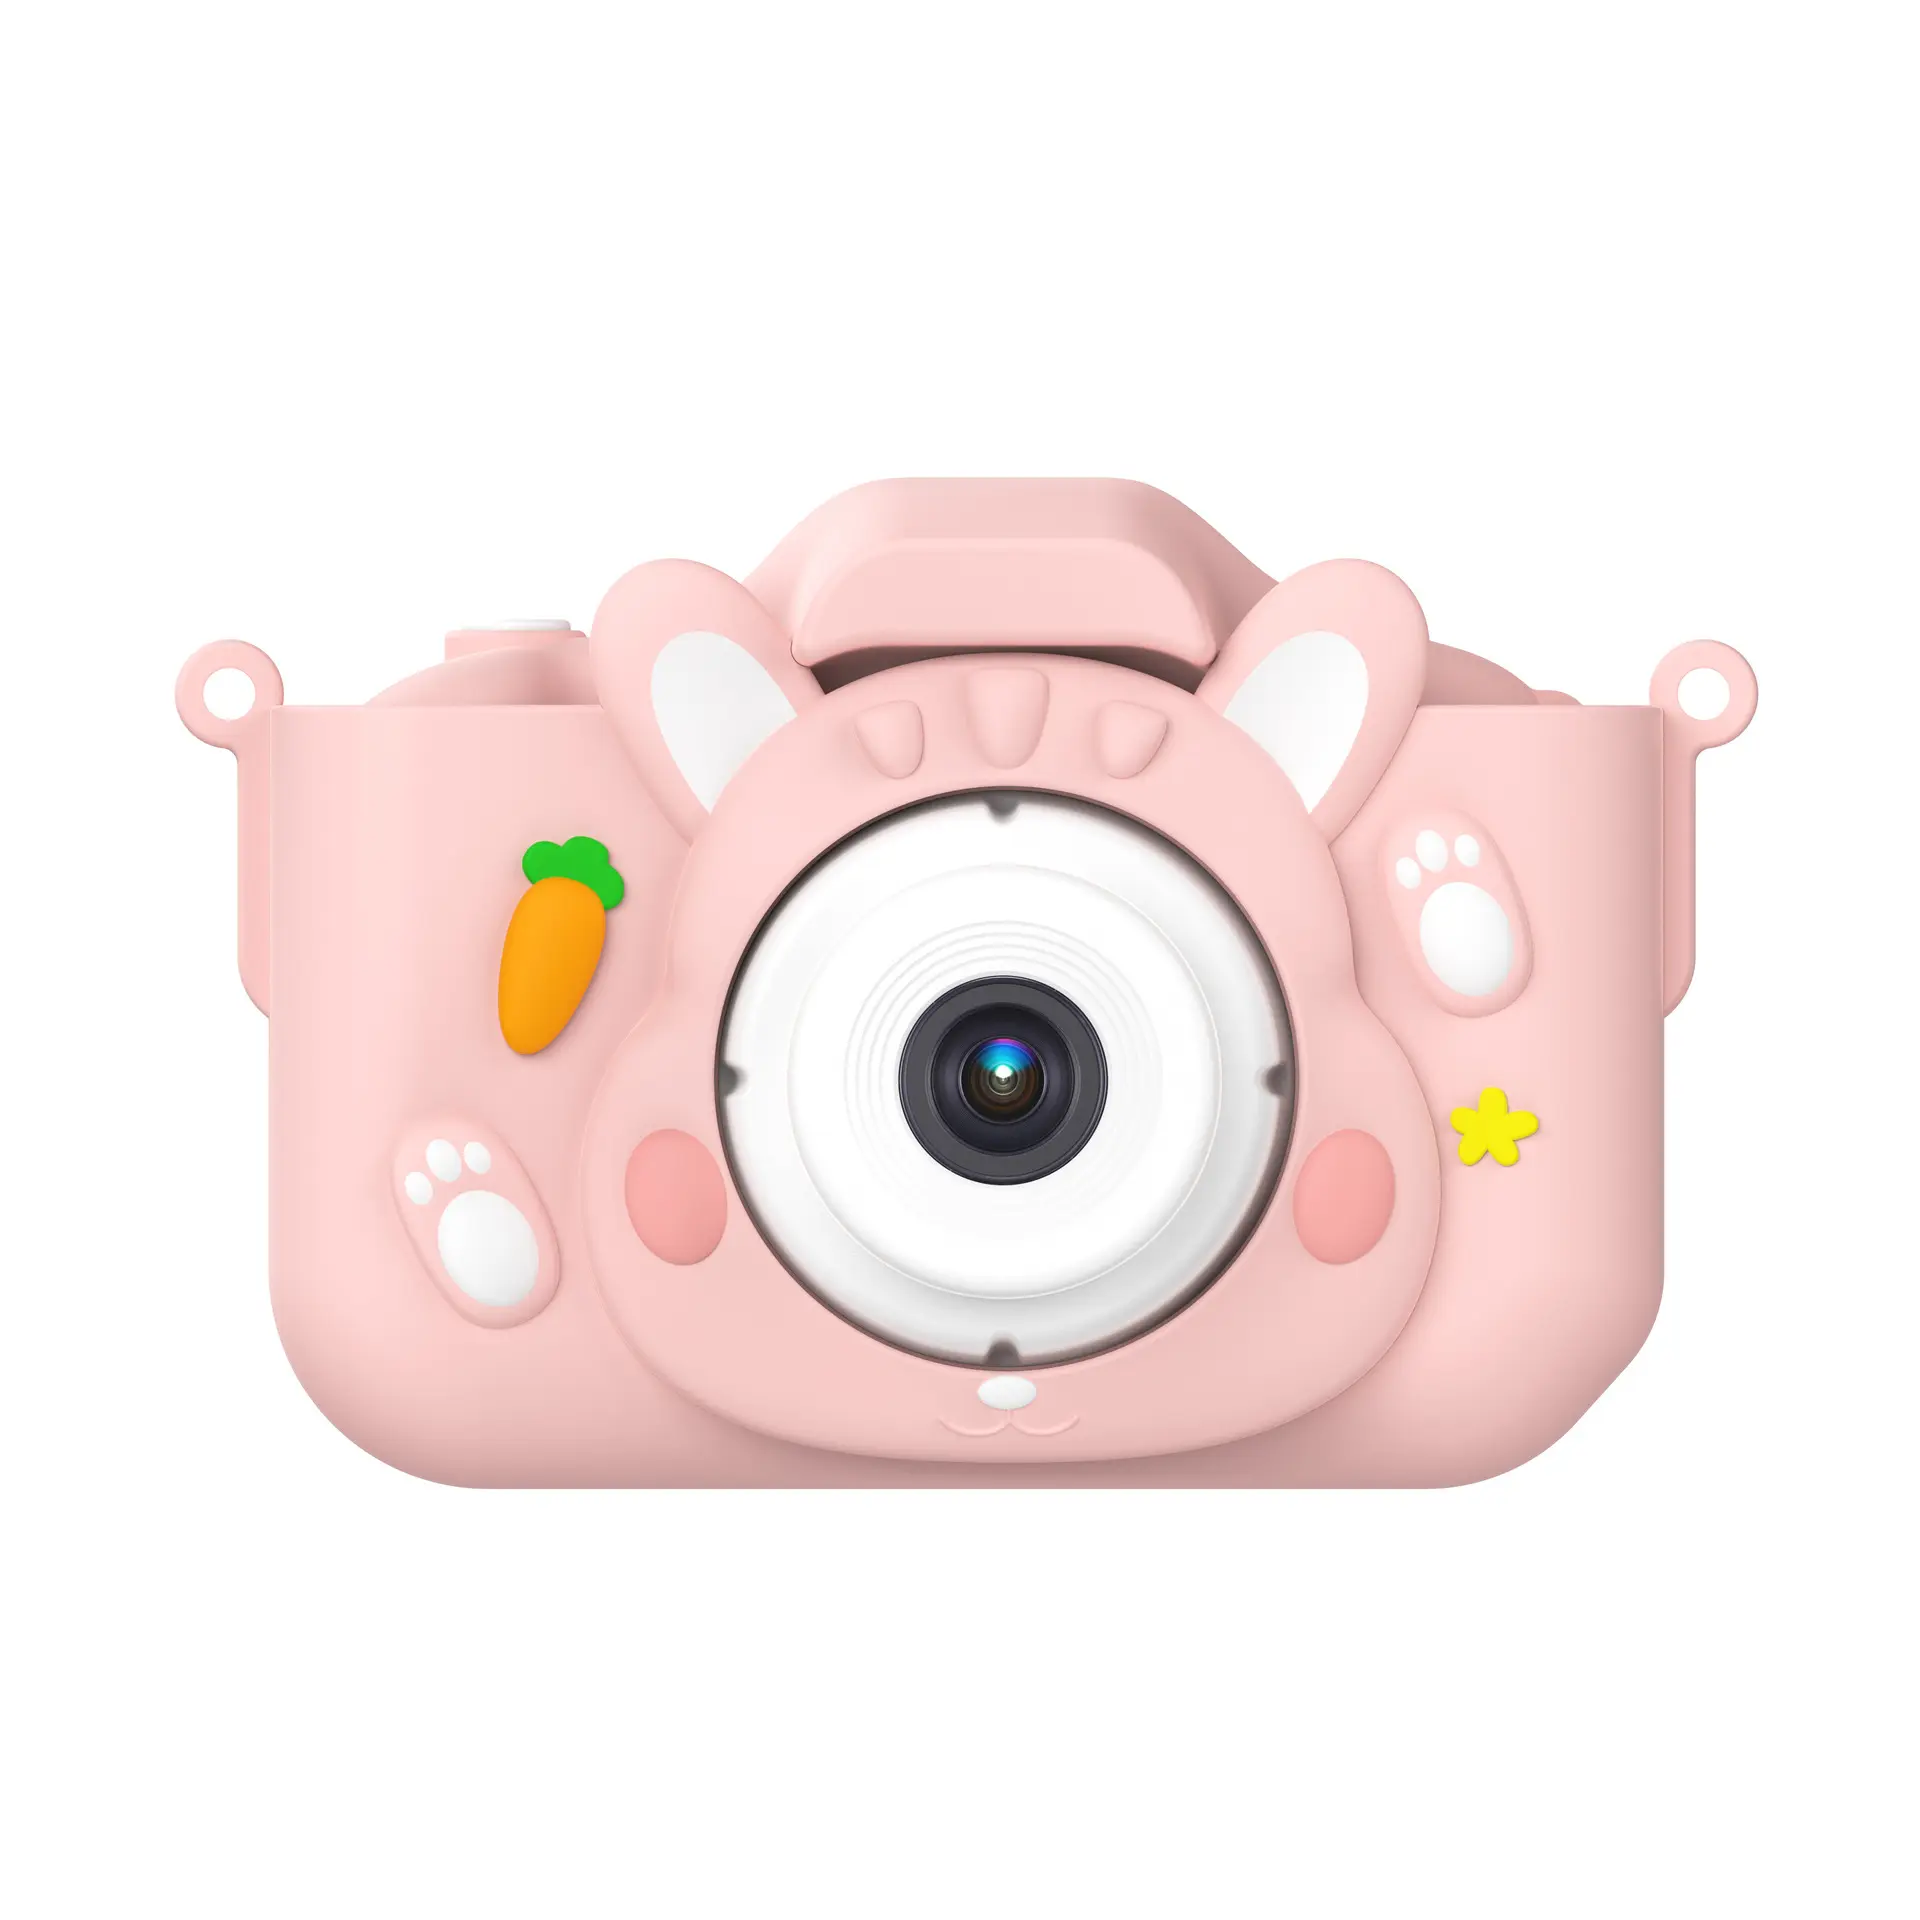 Buoni e regali a buon mercato piccola macchina fotografica colorata portatile per bambini colorati Mini giocattoli educativi su misura per bambini Video digitale